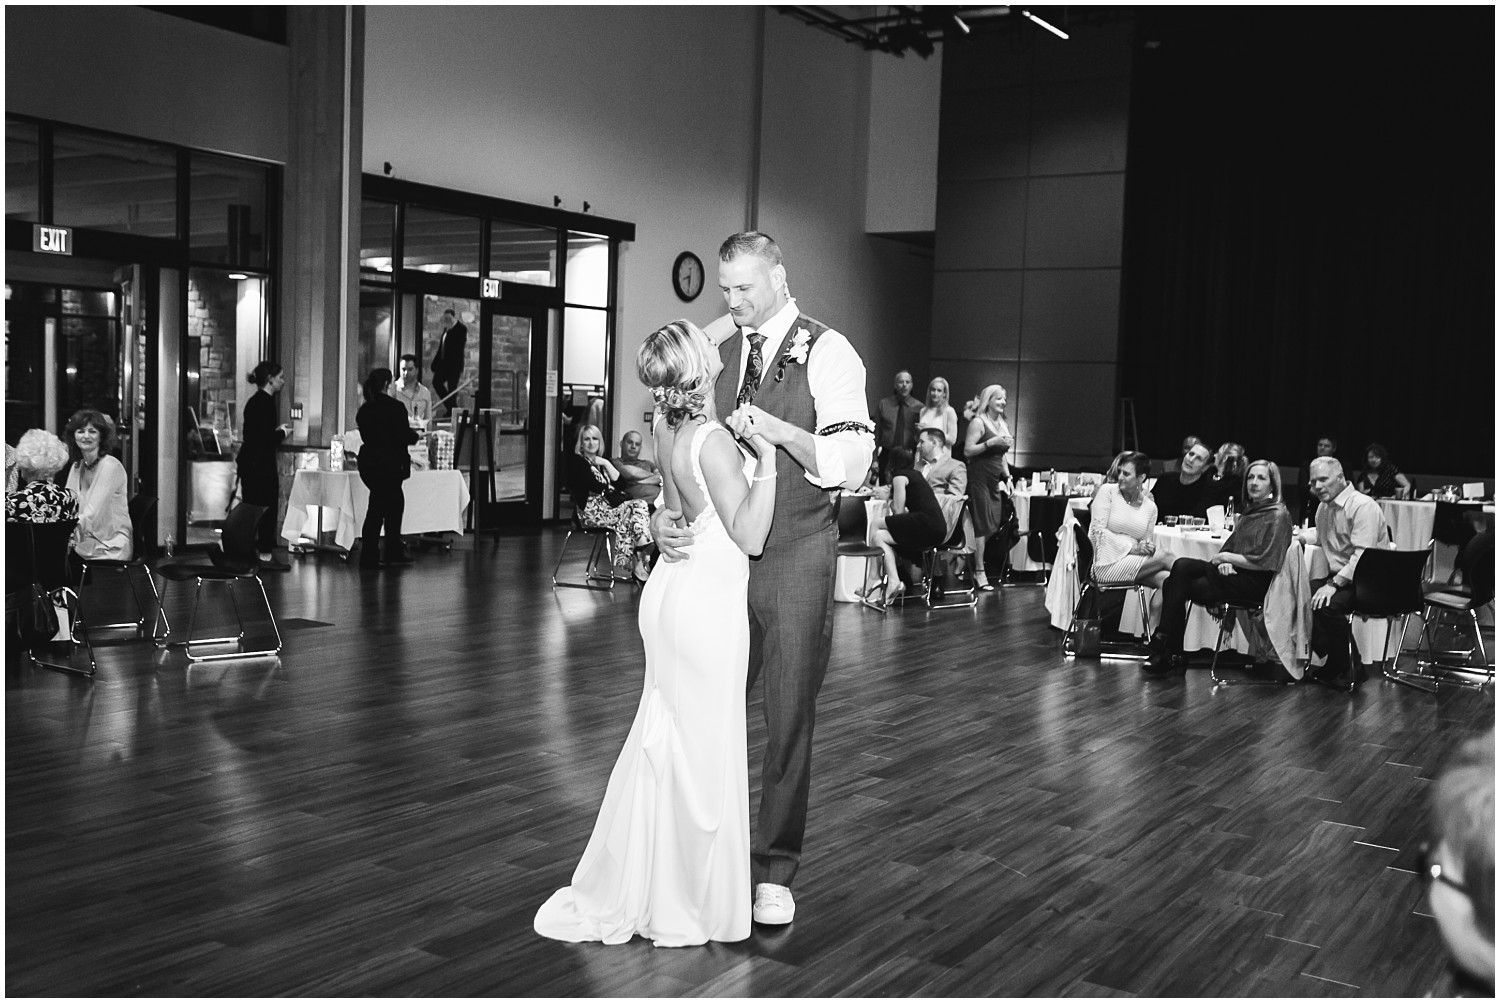 Rosehill Community Center Wedding | Kris & Melissa